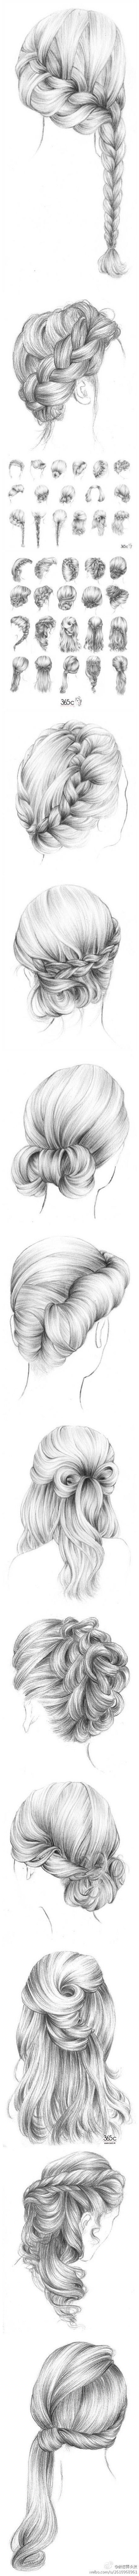 Lots of cute hair drawings